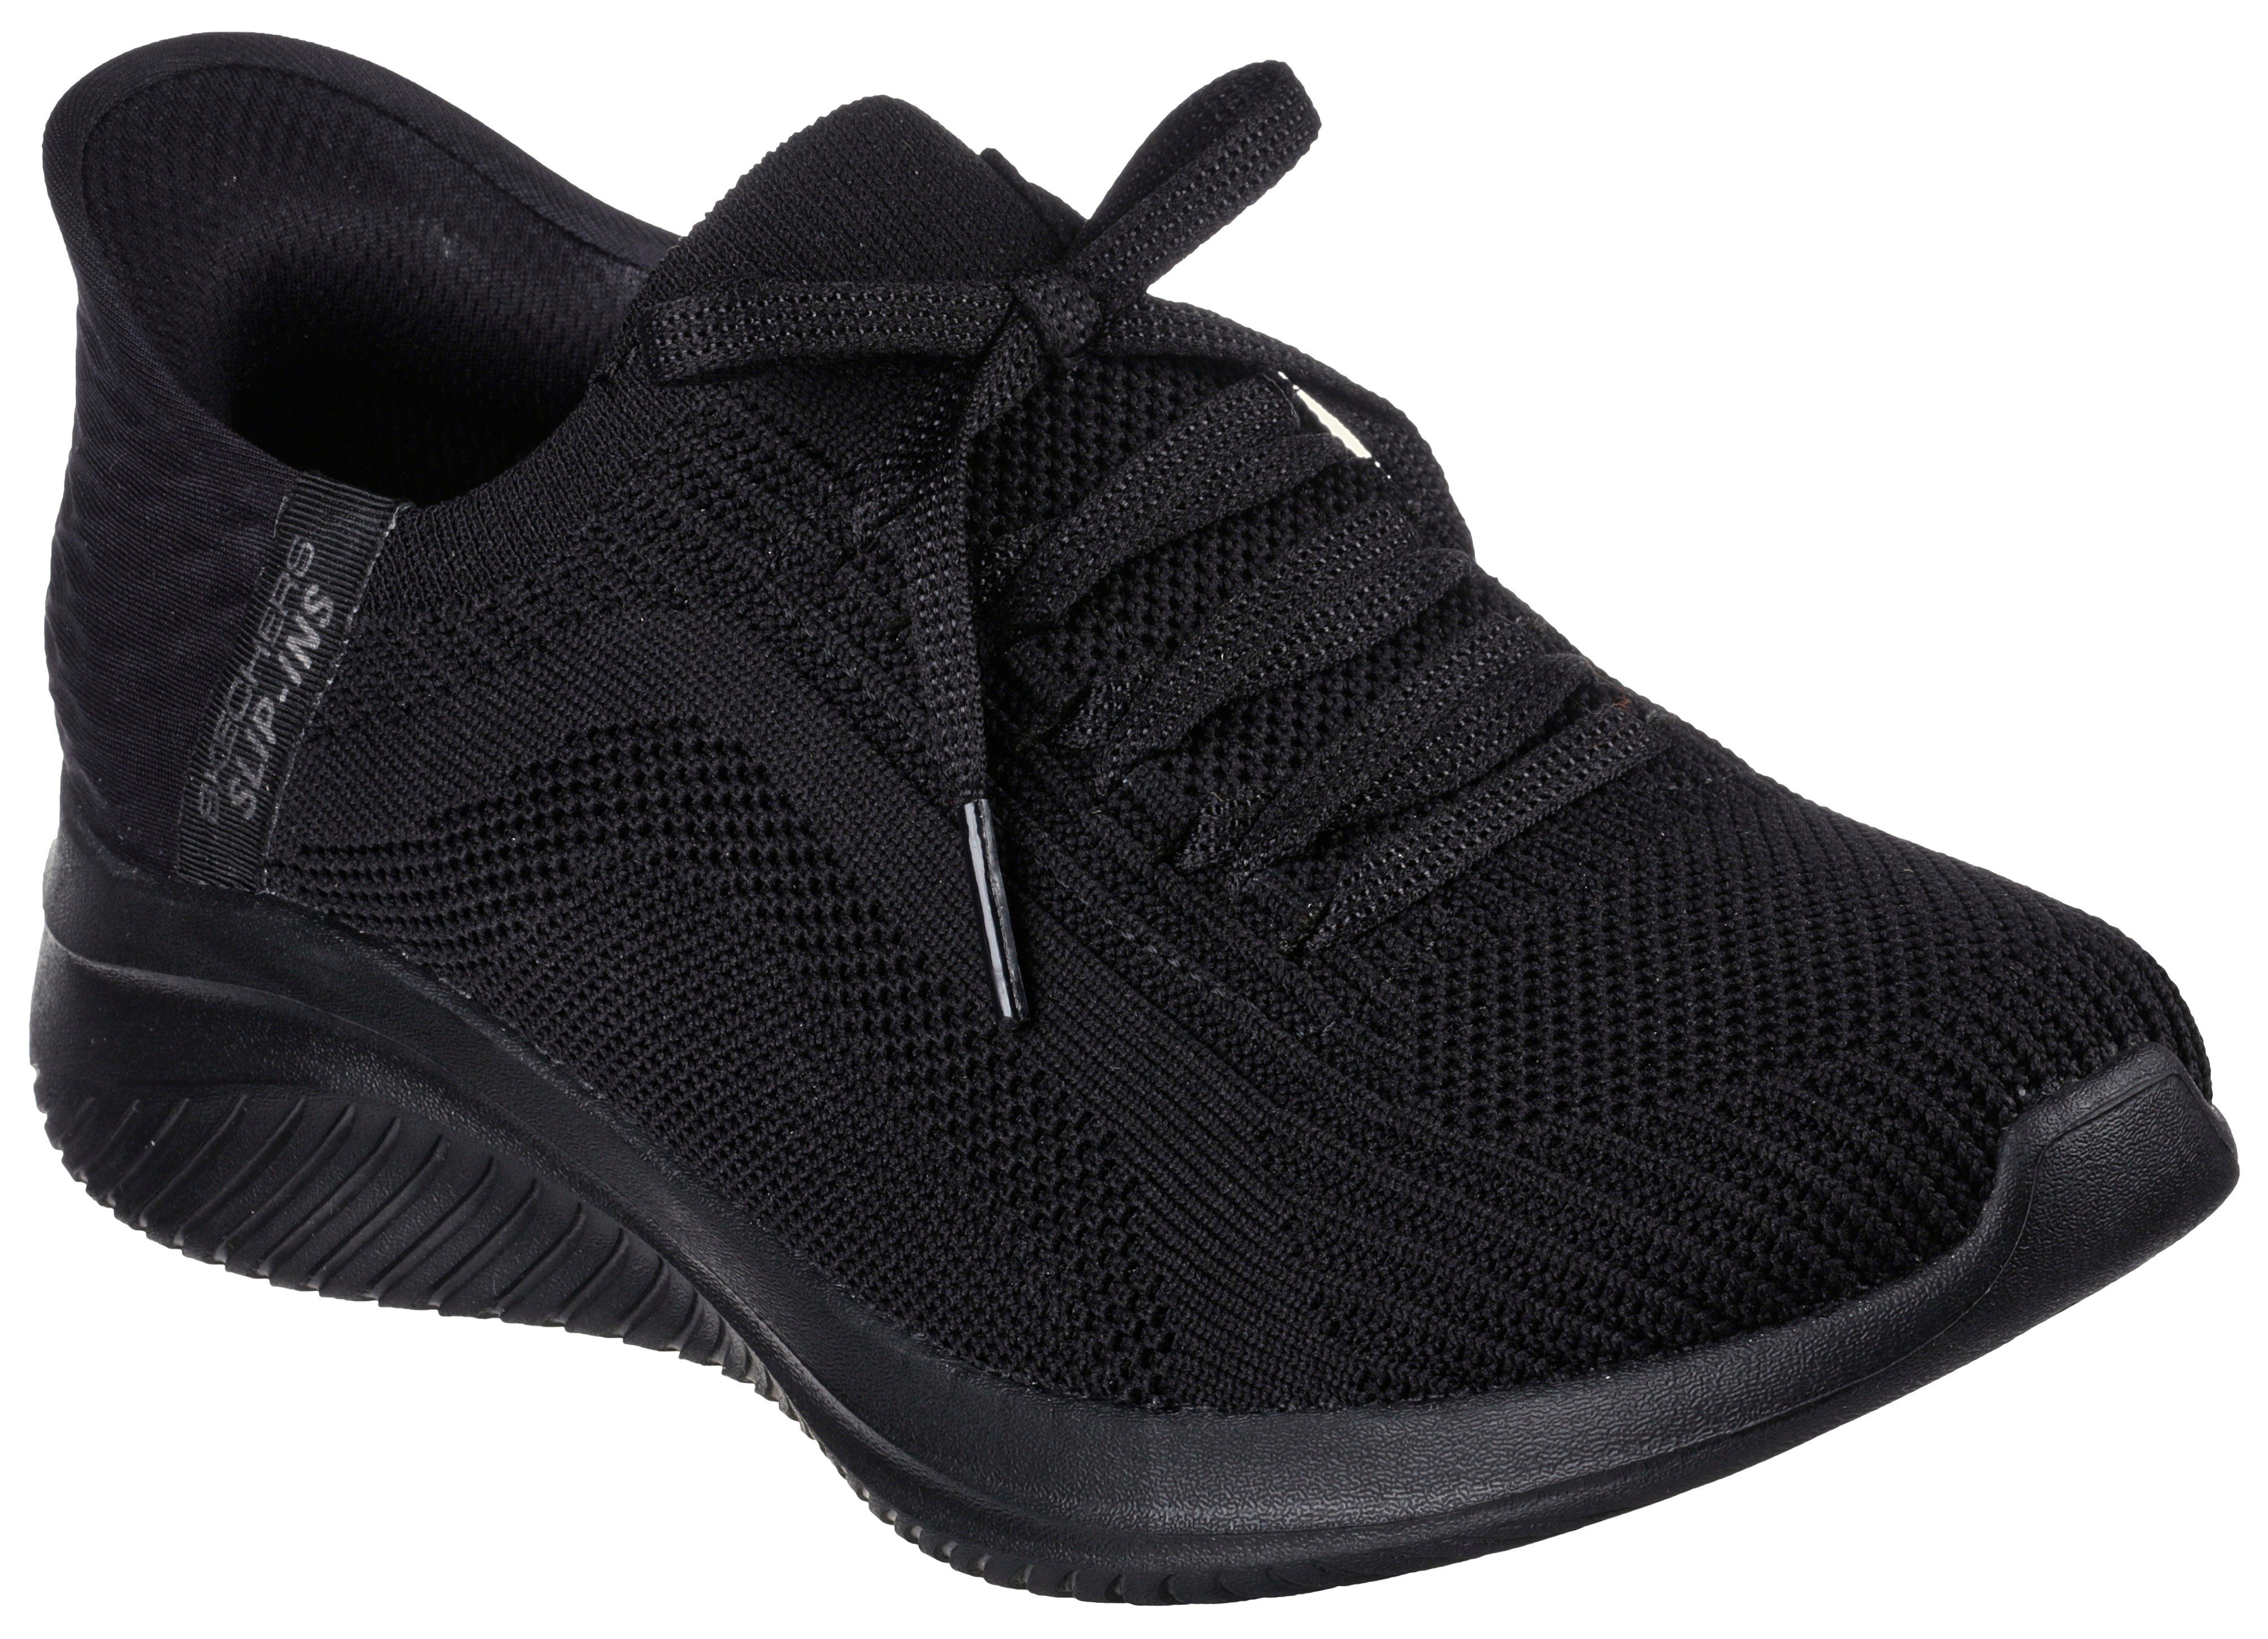 Skechers ULTRA FLEX 3.0 Slip-On Sneaker Slipper, Freizeitschuh mit Slip Ins-Funktion für leichten Einschlupf